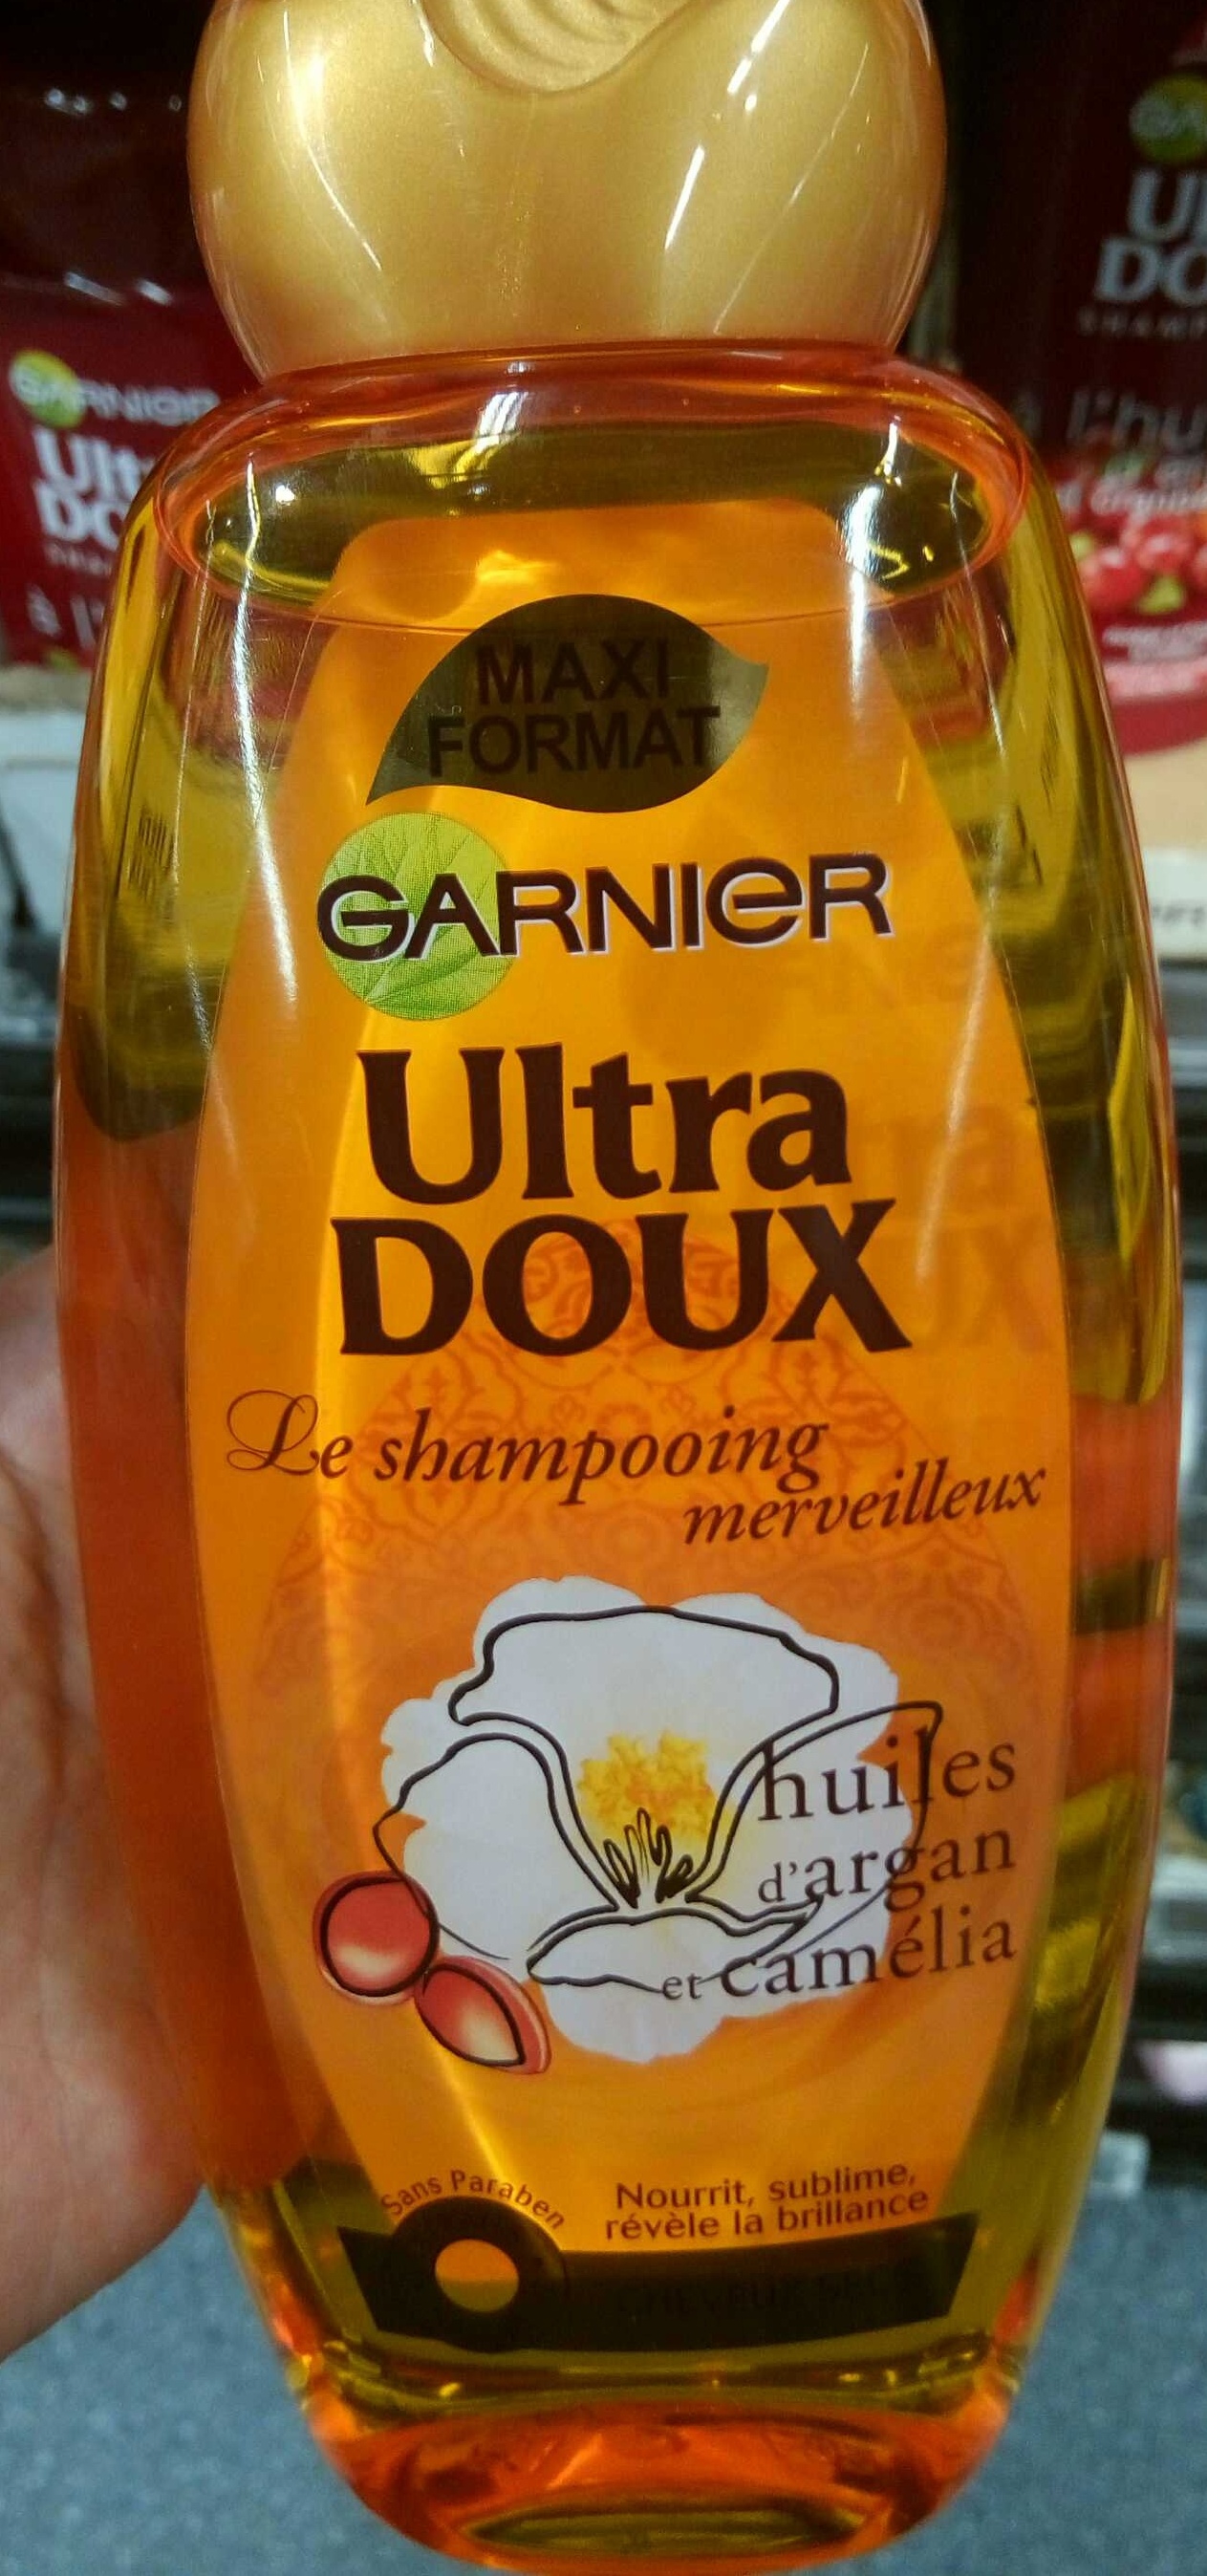 Ultra Doux Le shampooing merveilleux Huiles d'Argan et Camélia (maxi format) - Product - fr